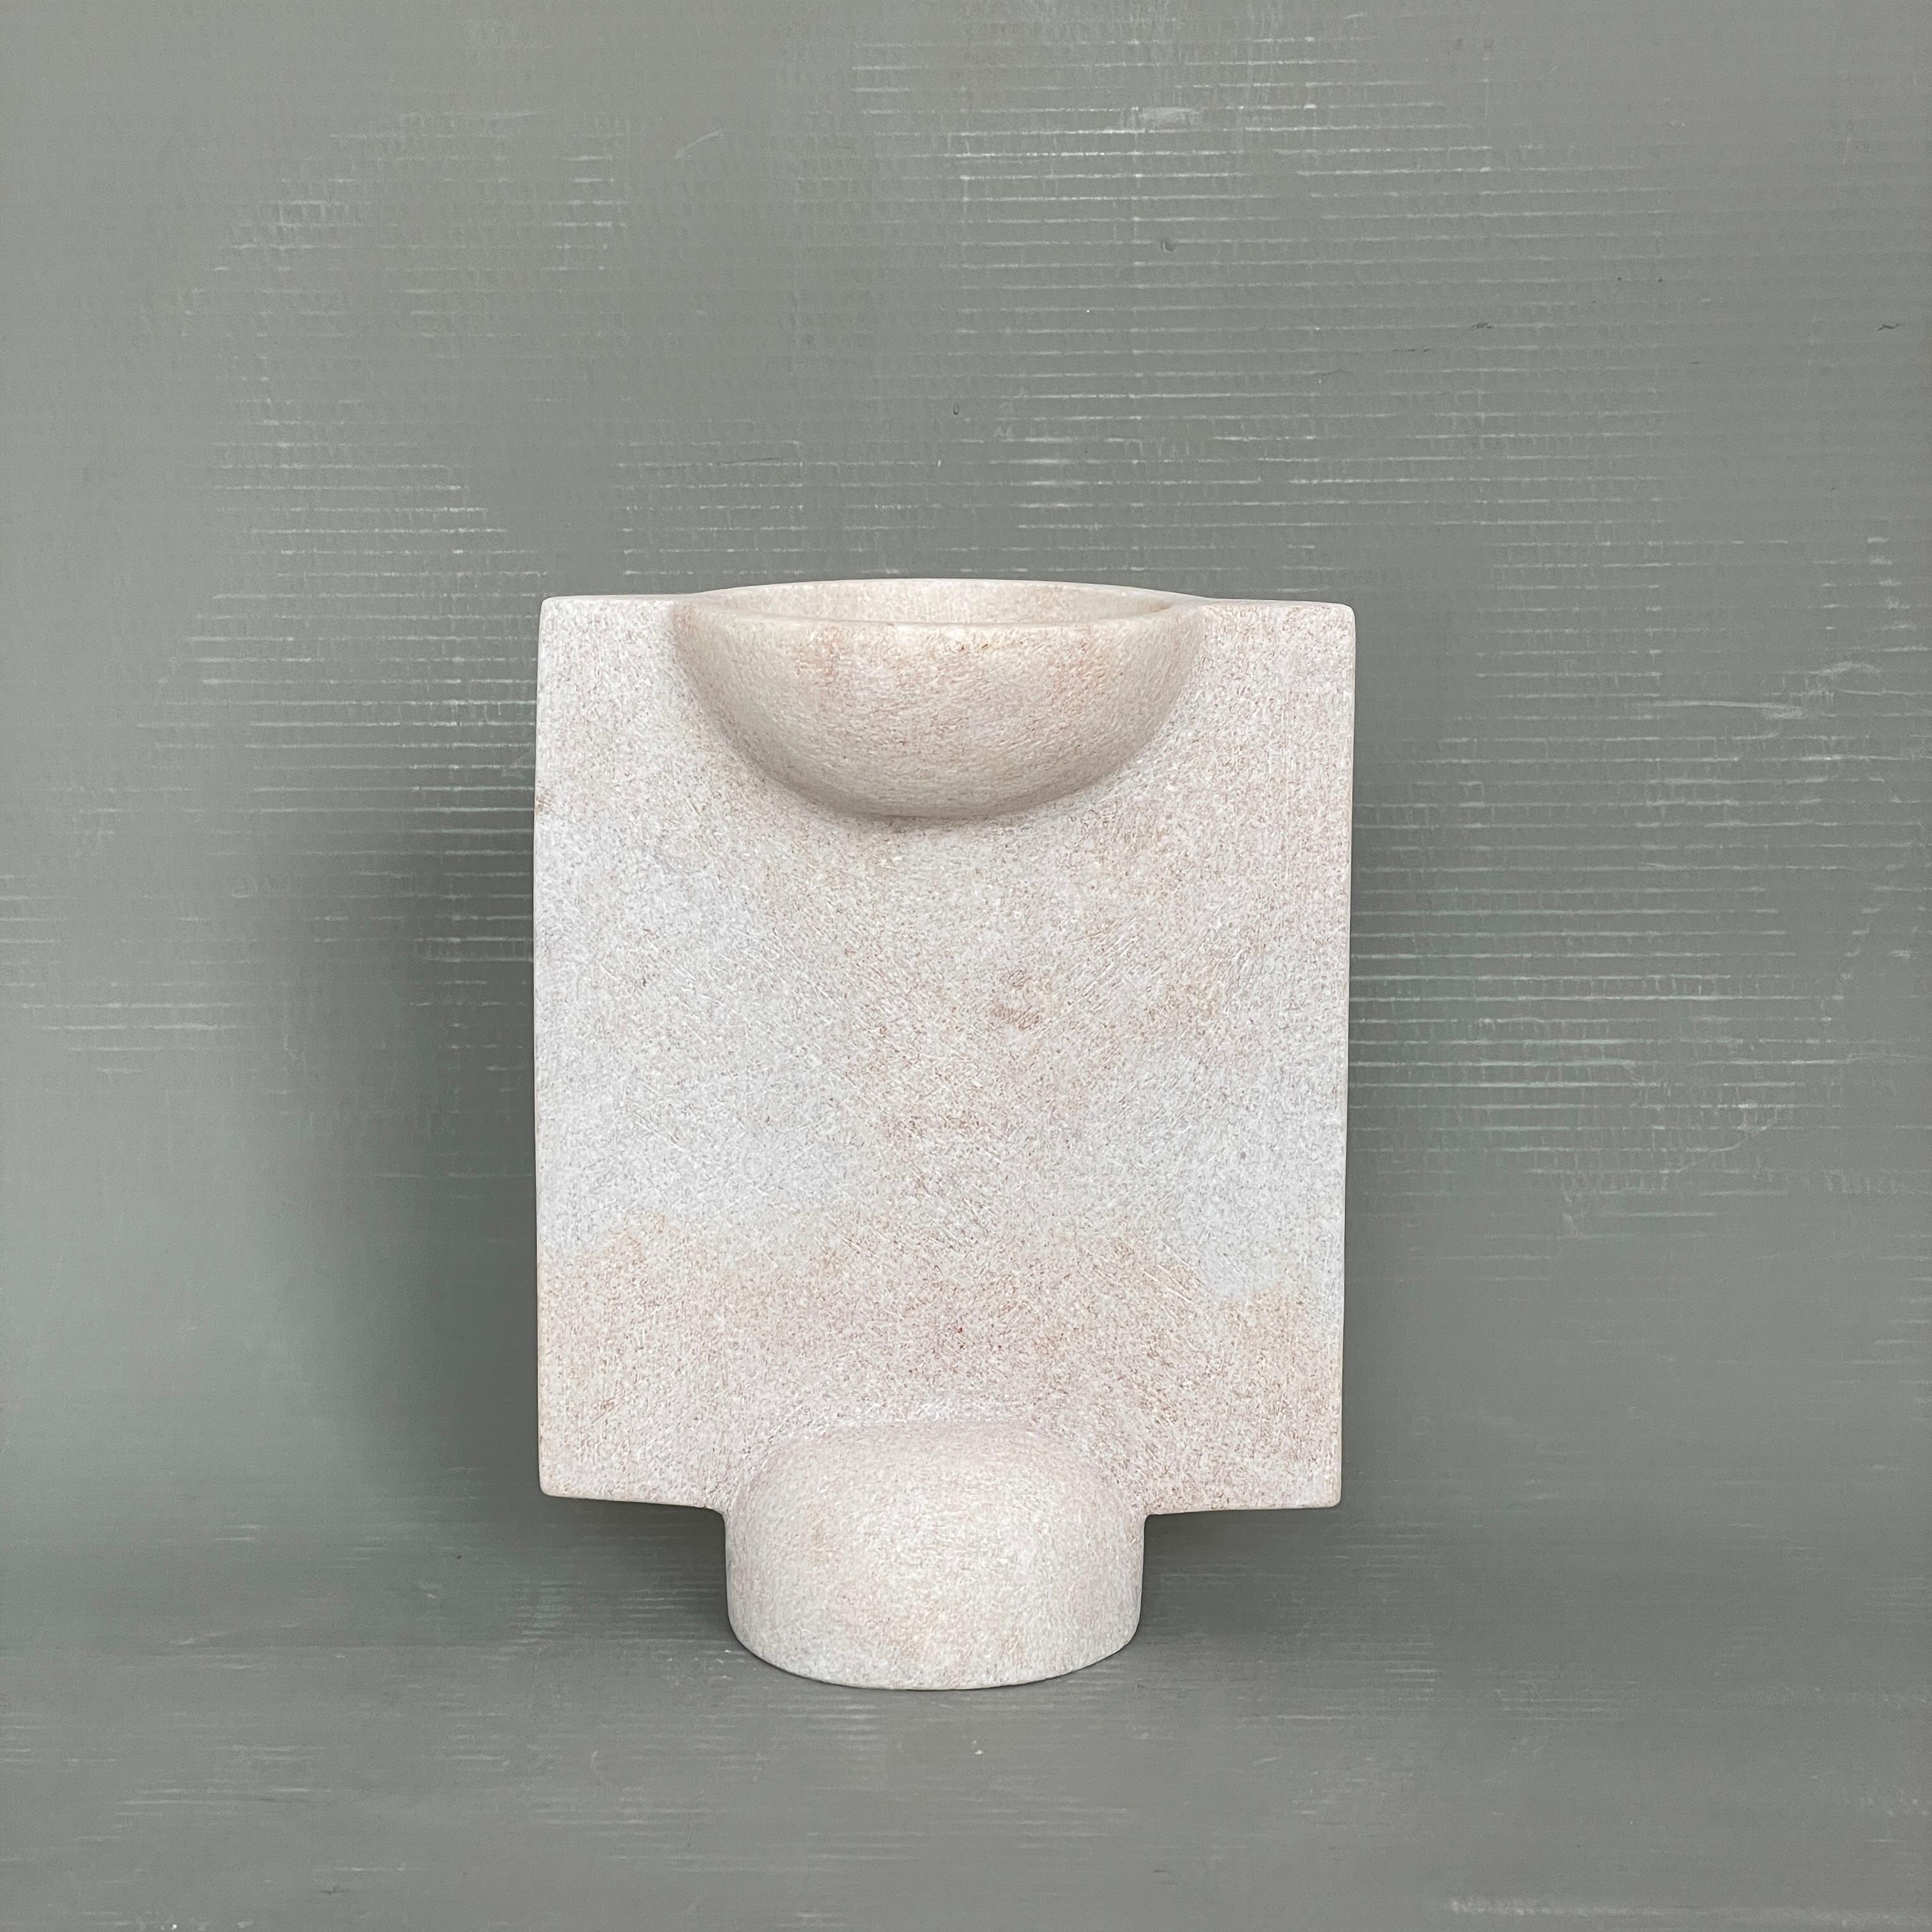 Vase en marbre sculpté à la main par Tom Von Kaenel
Matériaux : Marbre
Dimensions : L12,5 x P20 x H26 cm

Tom von Kaenel, sculpteur et peintre, est né en Suisse en 1961. Déjà au début de sa vie
Dès son enfance, il s'est profondément consacré à